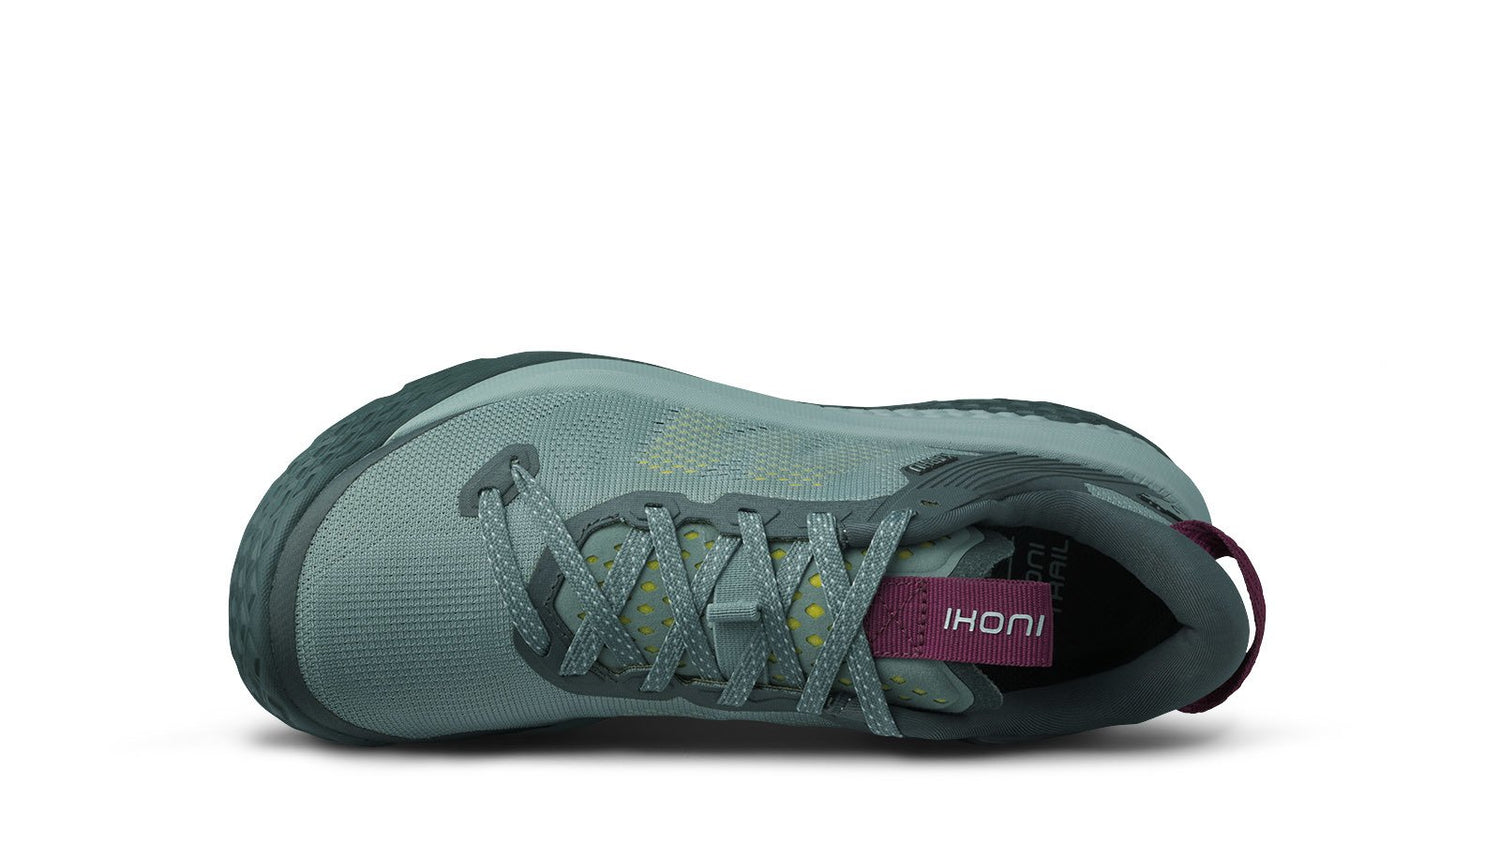 Women's KARHU Ikoni Trail running shoe forefoot lacing system